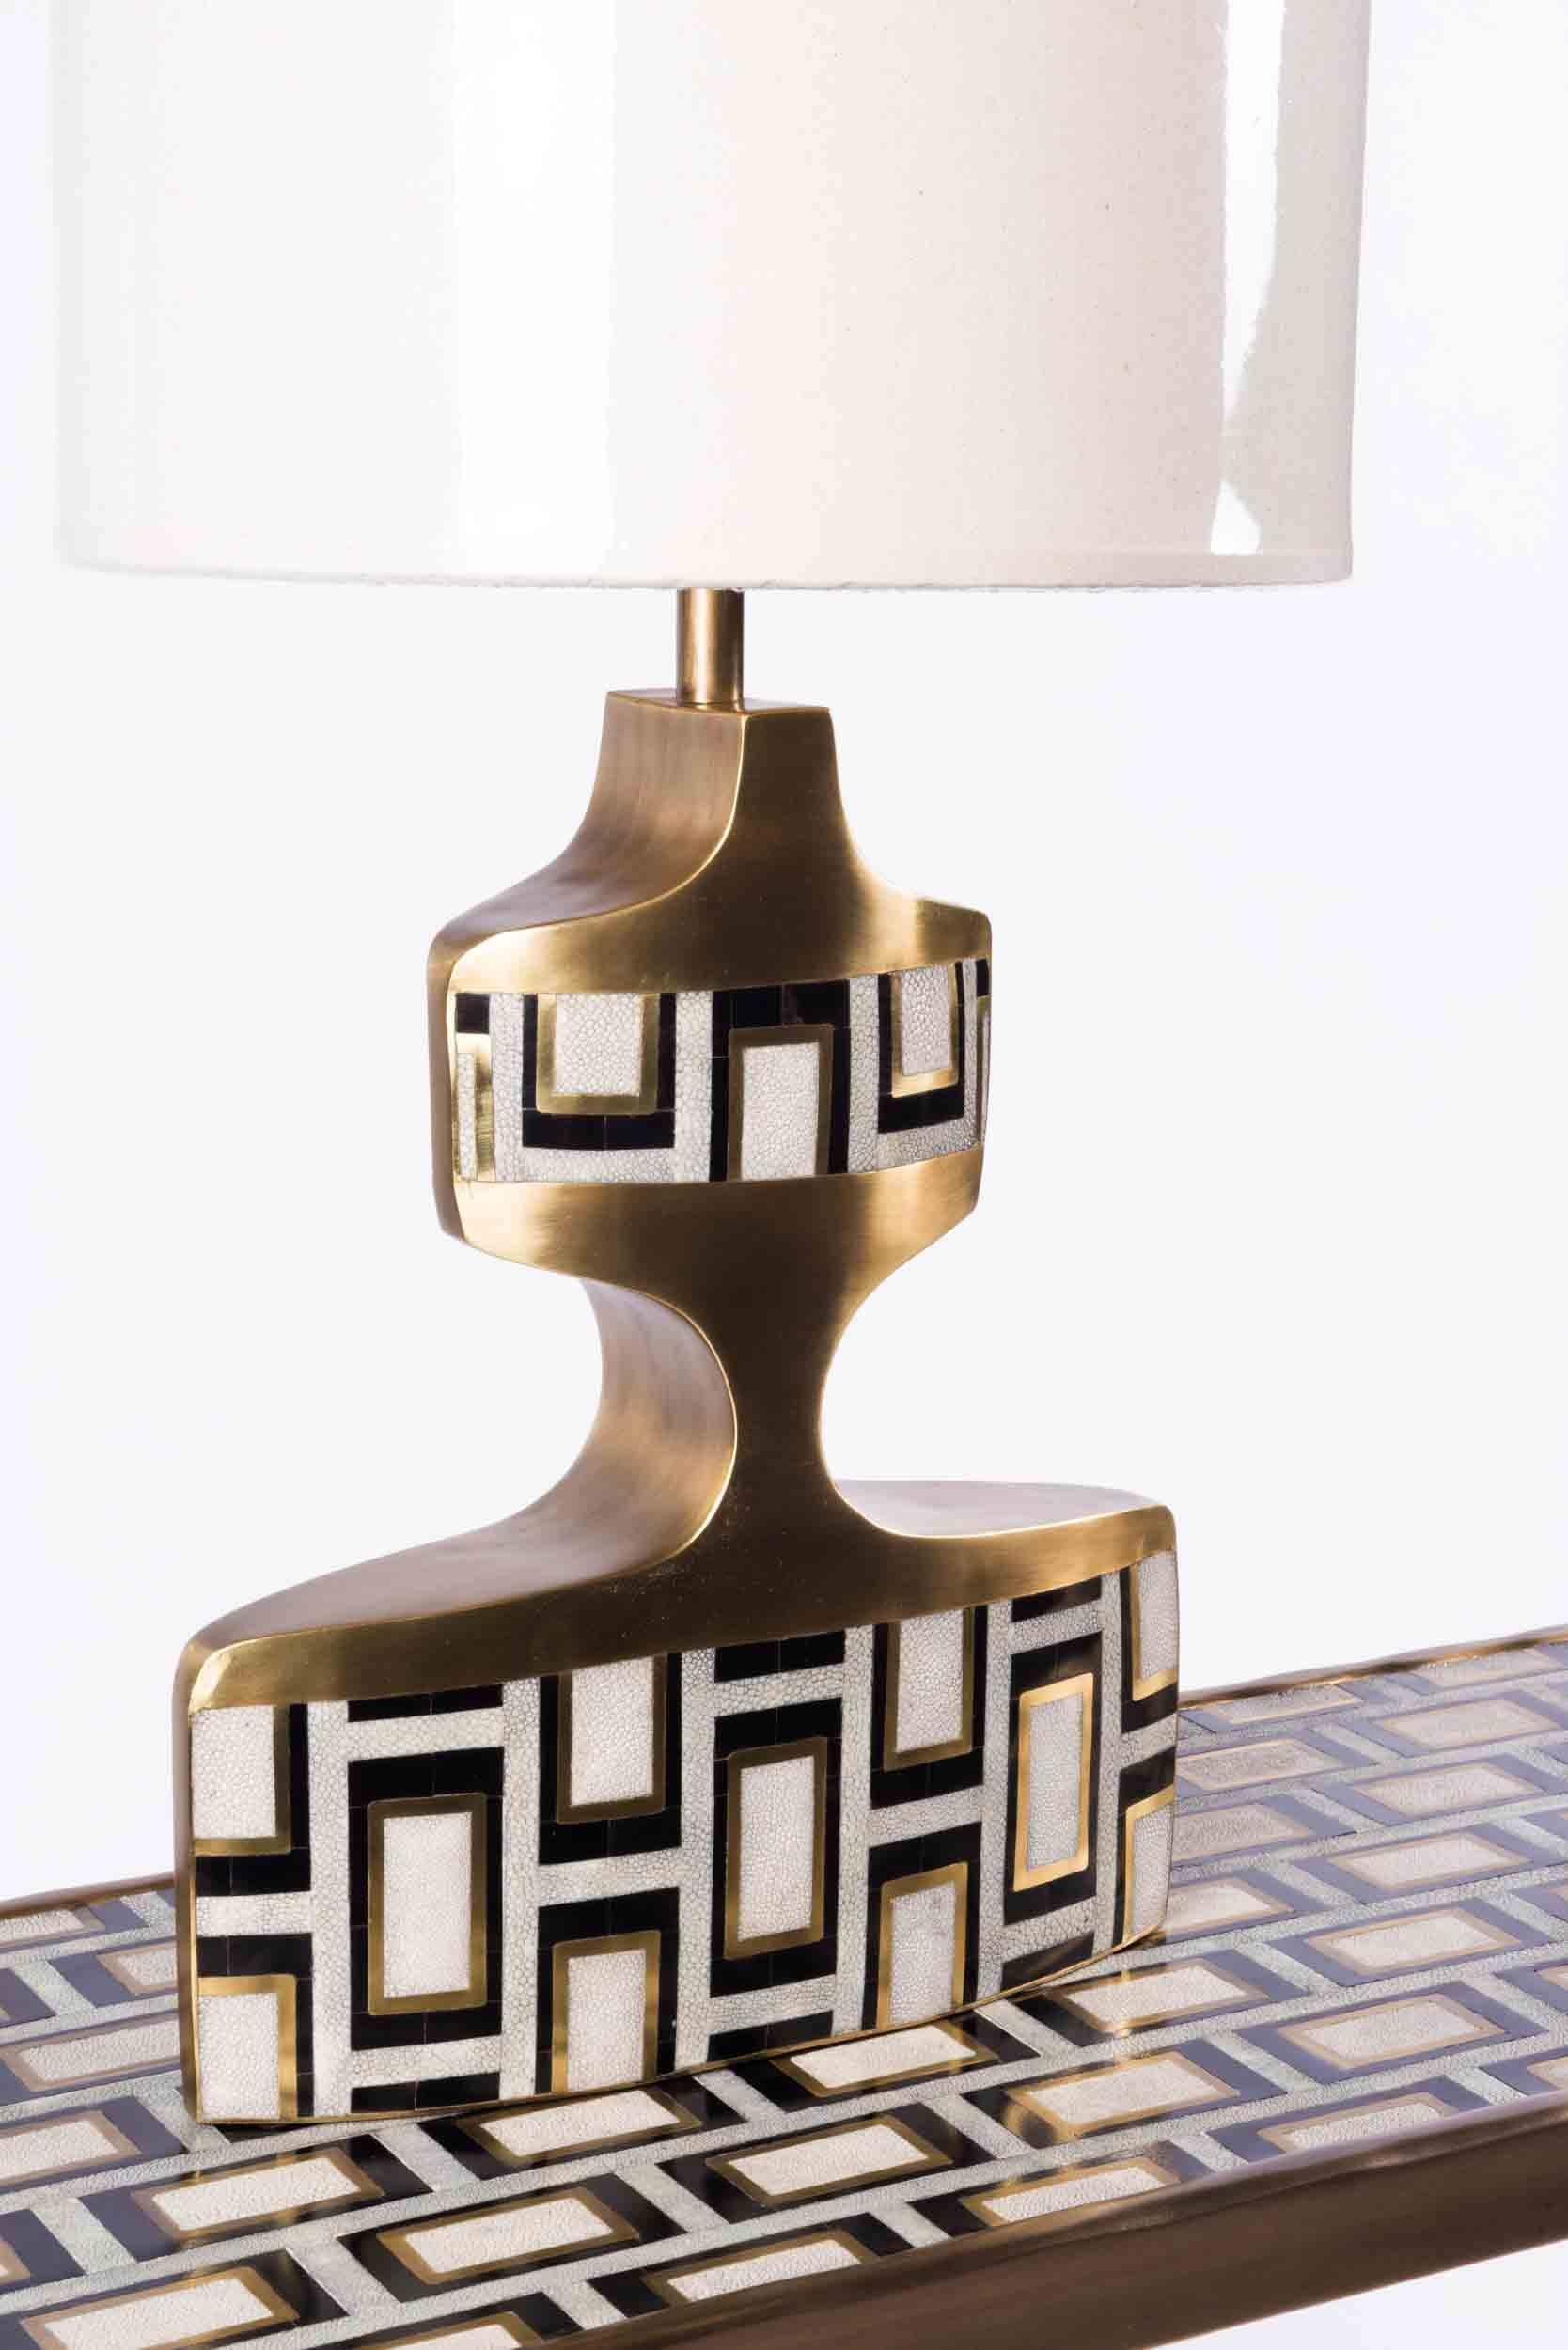 La lampe géométrique est une pièce sculpturale avec de beaux détails d'incrustation. Cette lampe de table présente un motif de bloc audacieux dans un mélange de galuchat crème, de coquille de stylo noir et de laiton patiné bronze. Abat-jour inclus.